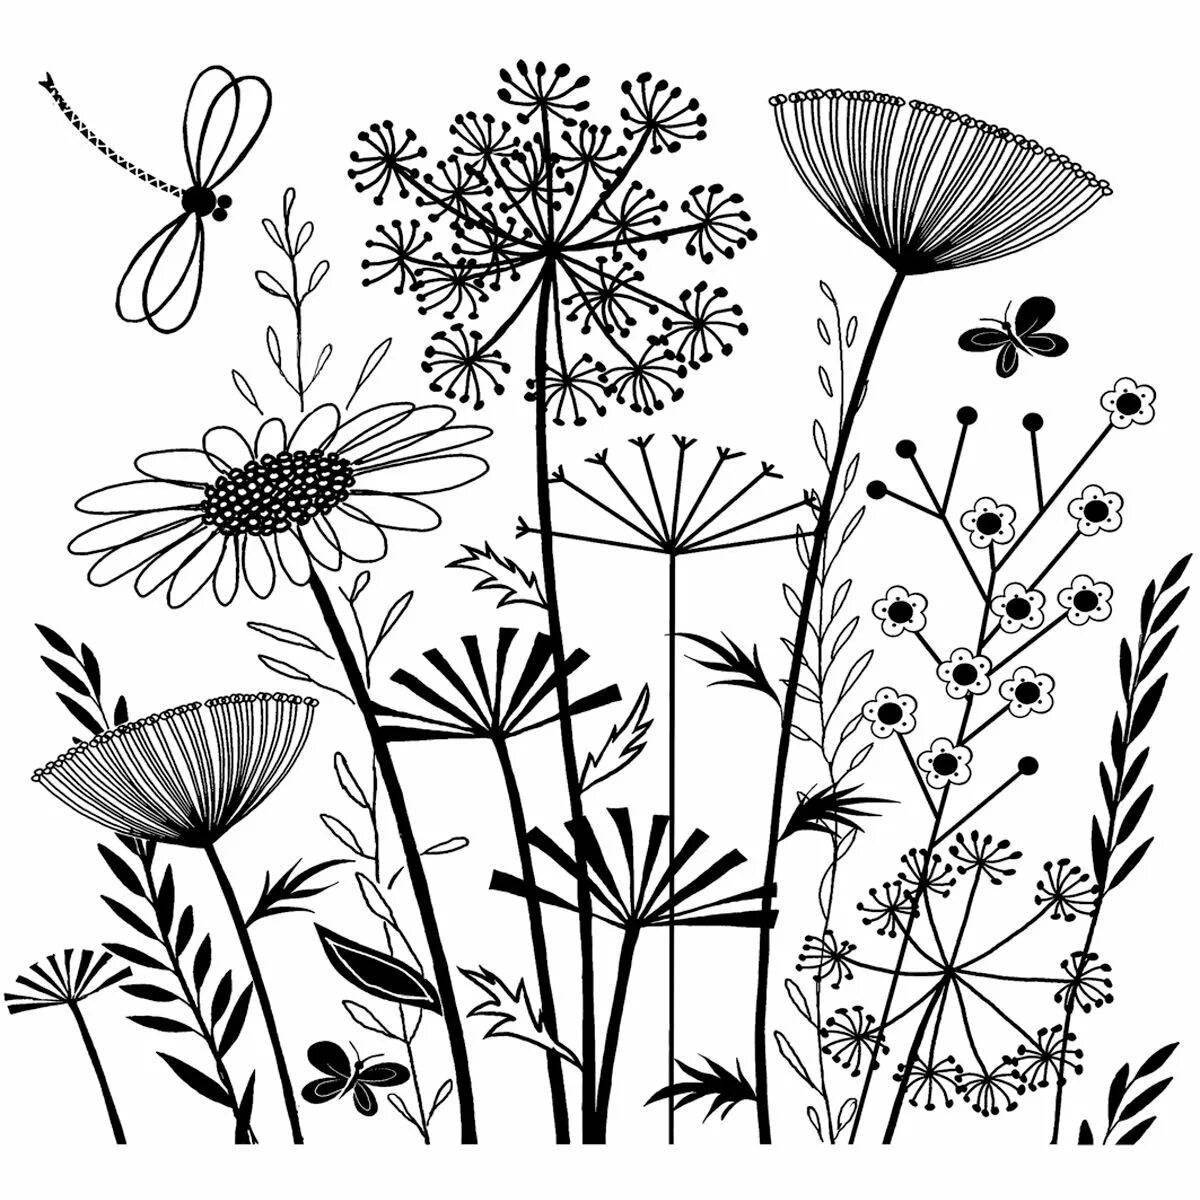 Coloring page joyful botany